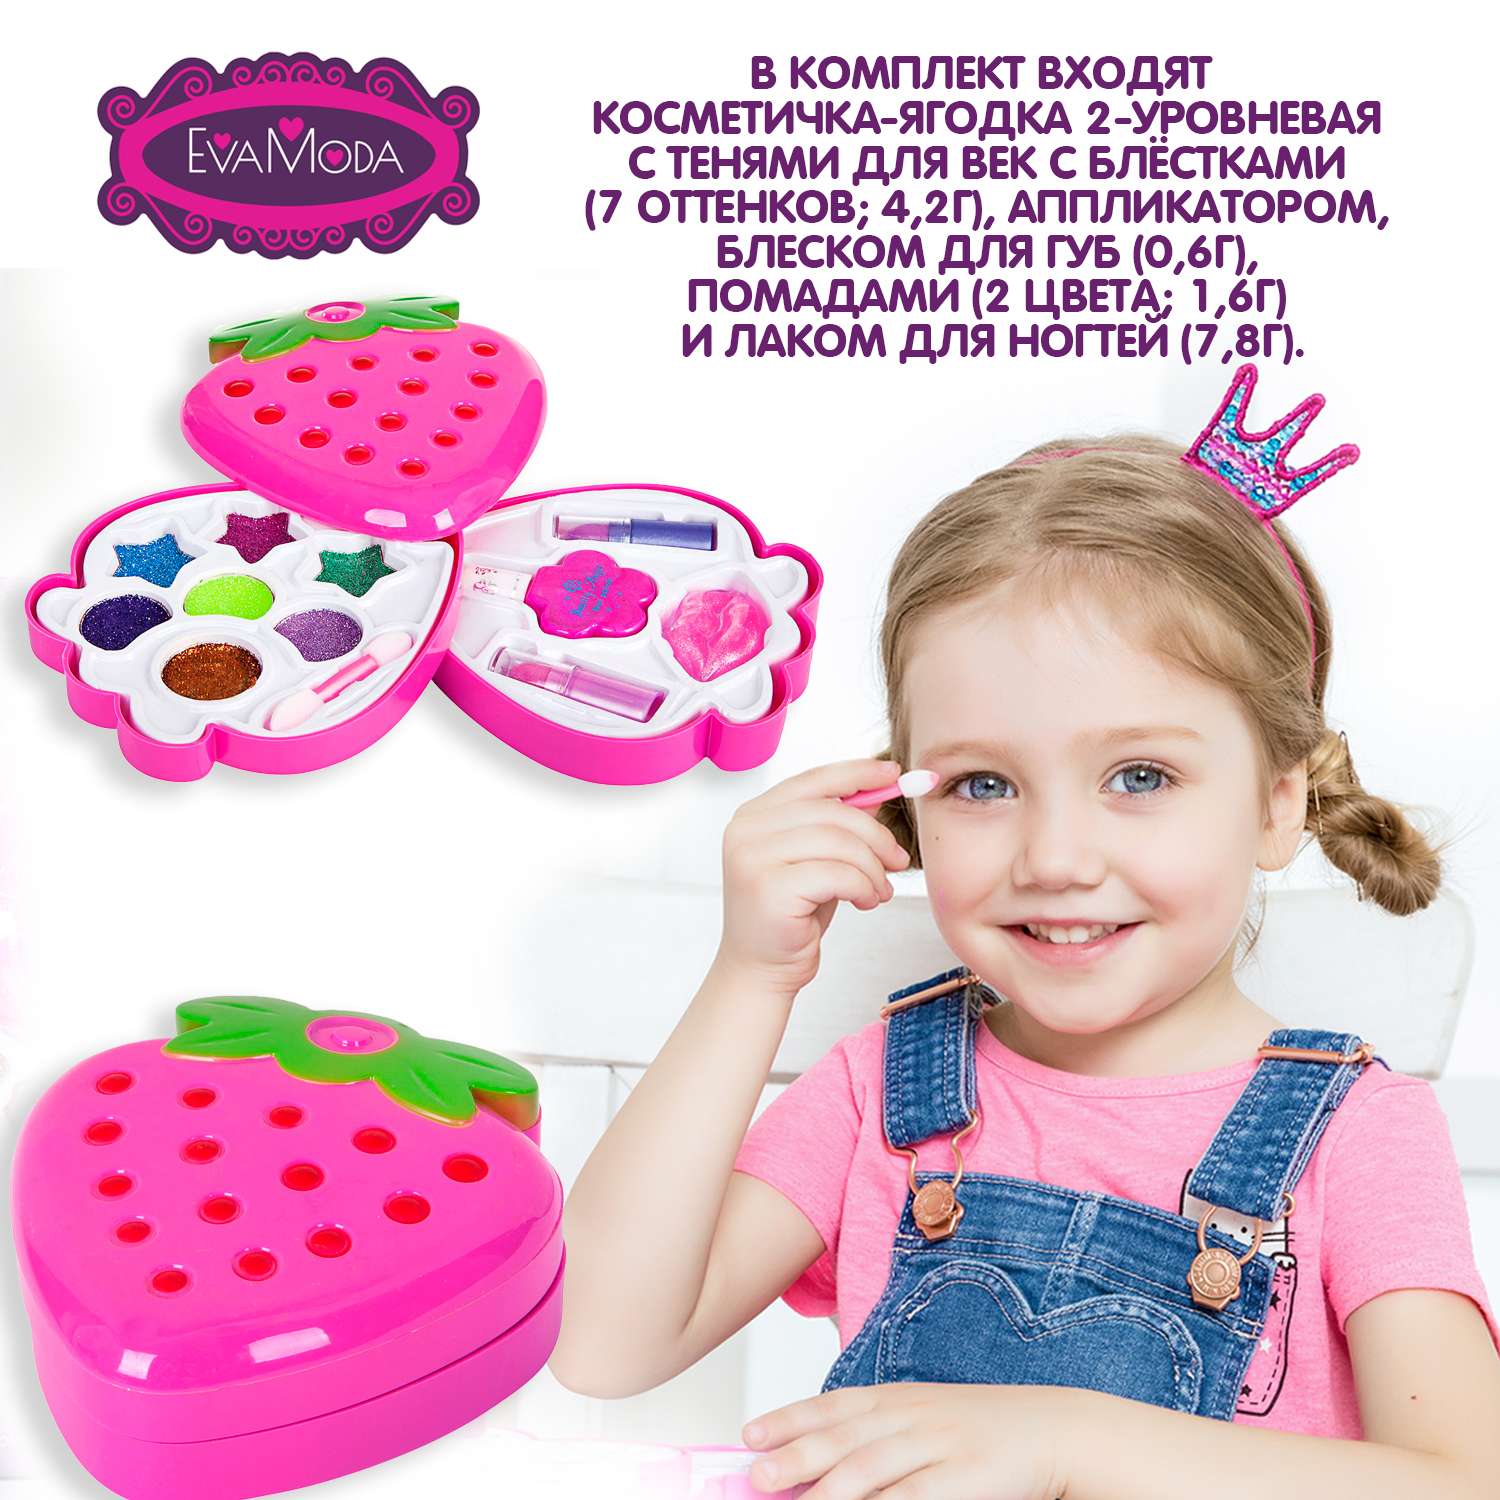 Набор детской косметики BONDIBON Eva Moda Косметичка-ягодка 2х-уровневая - фото 2